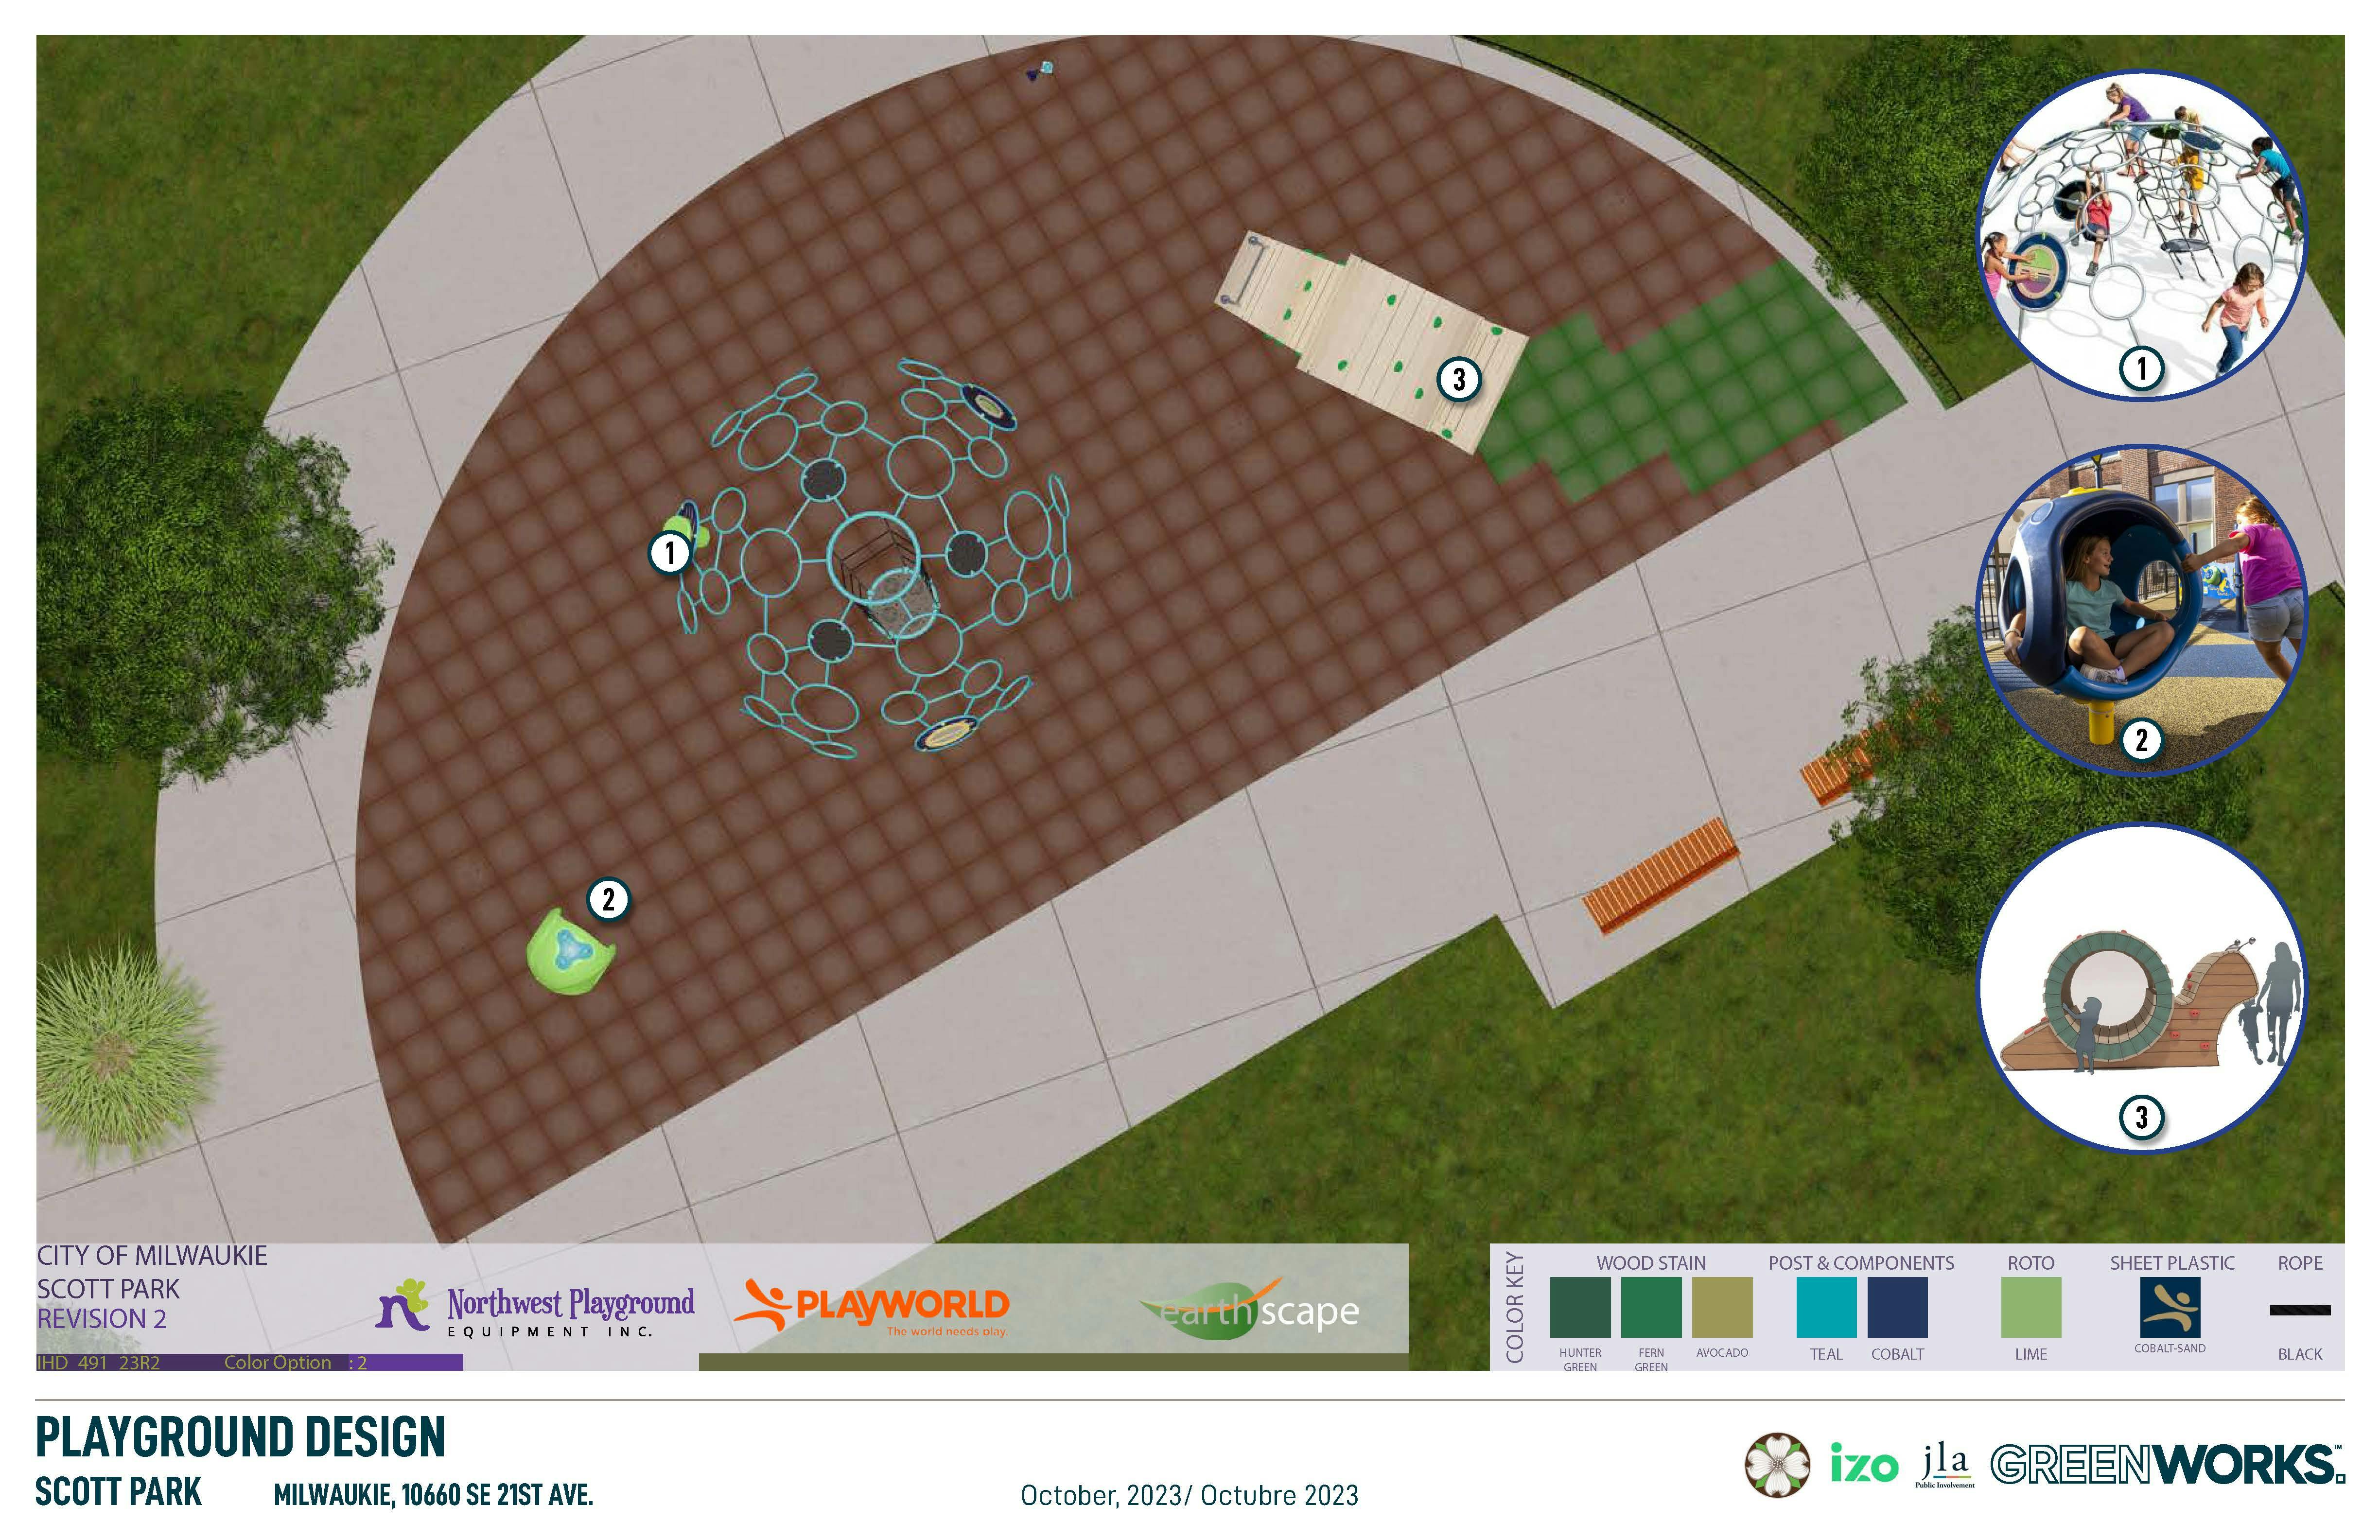 Scott Park Playground Design Overview